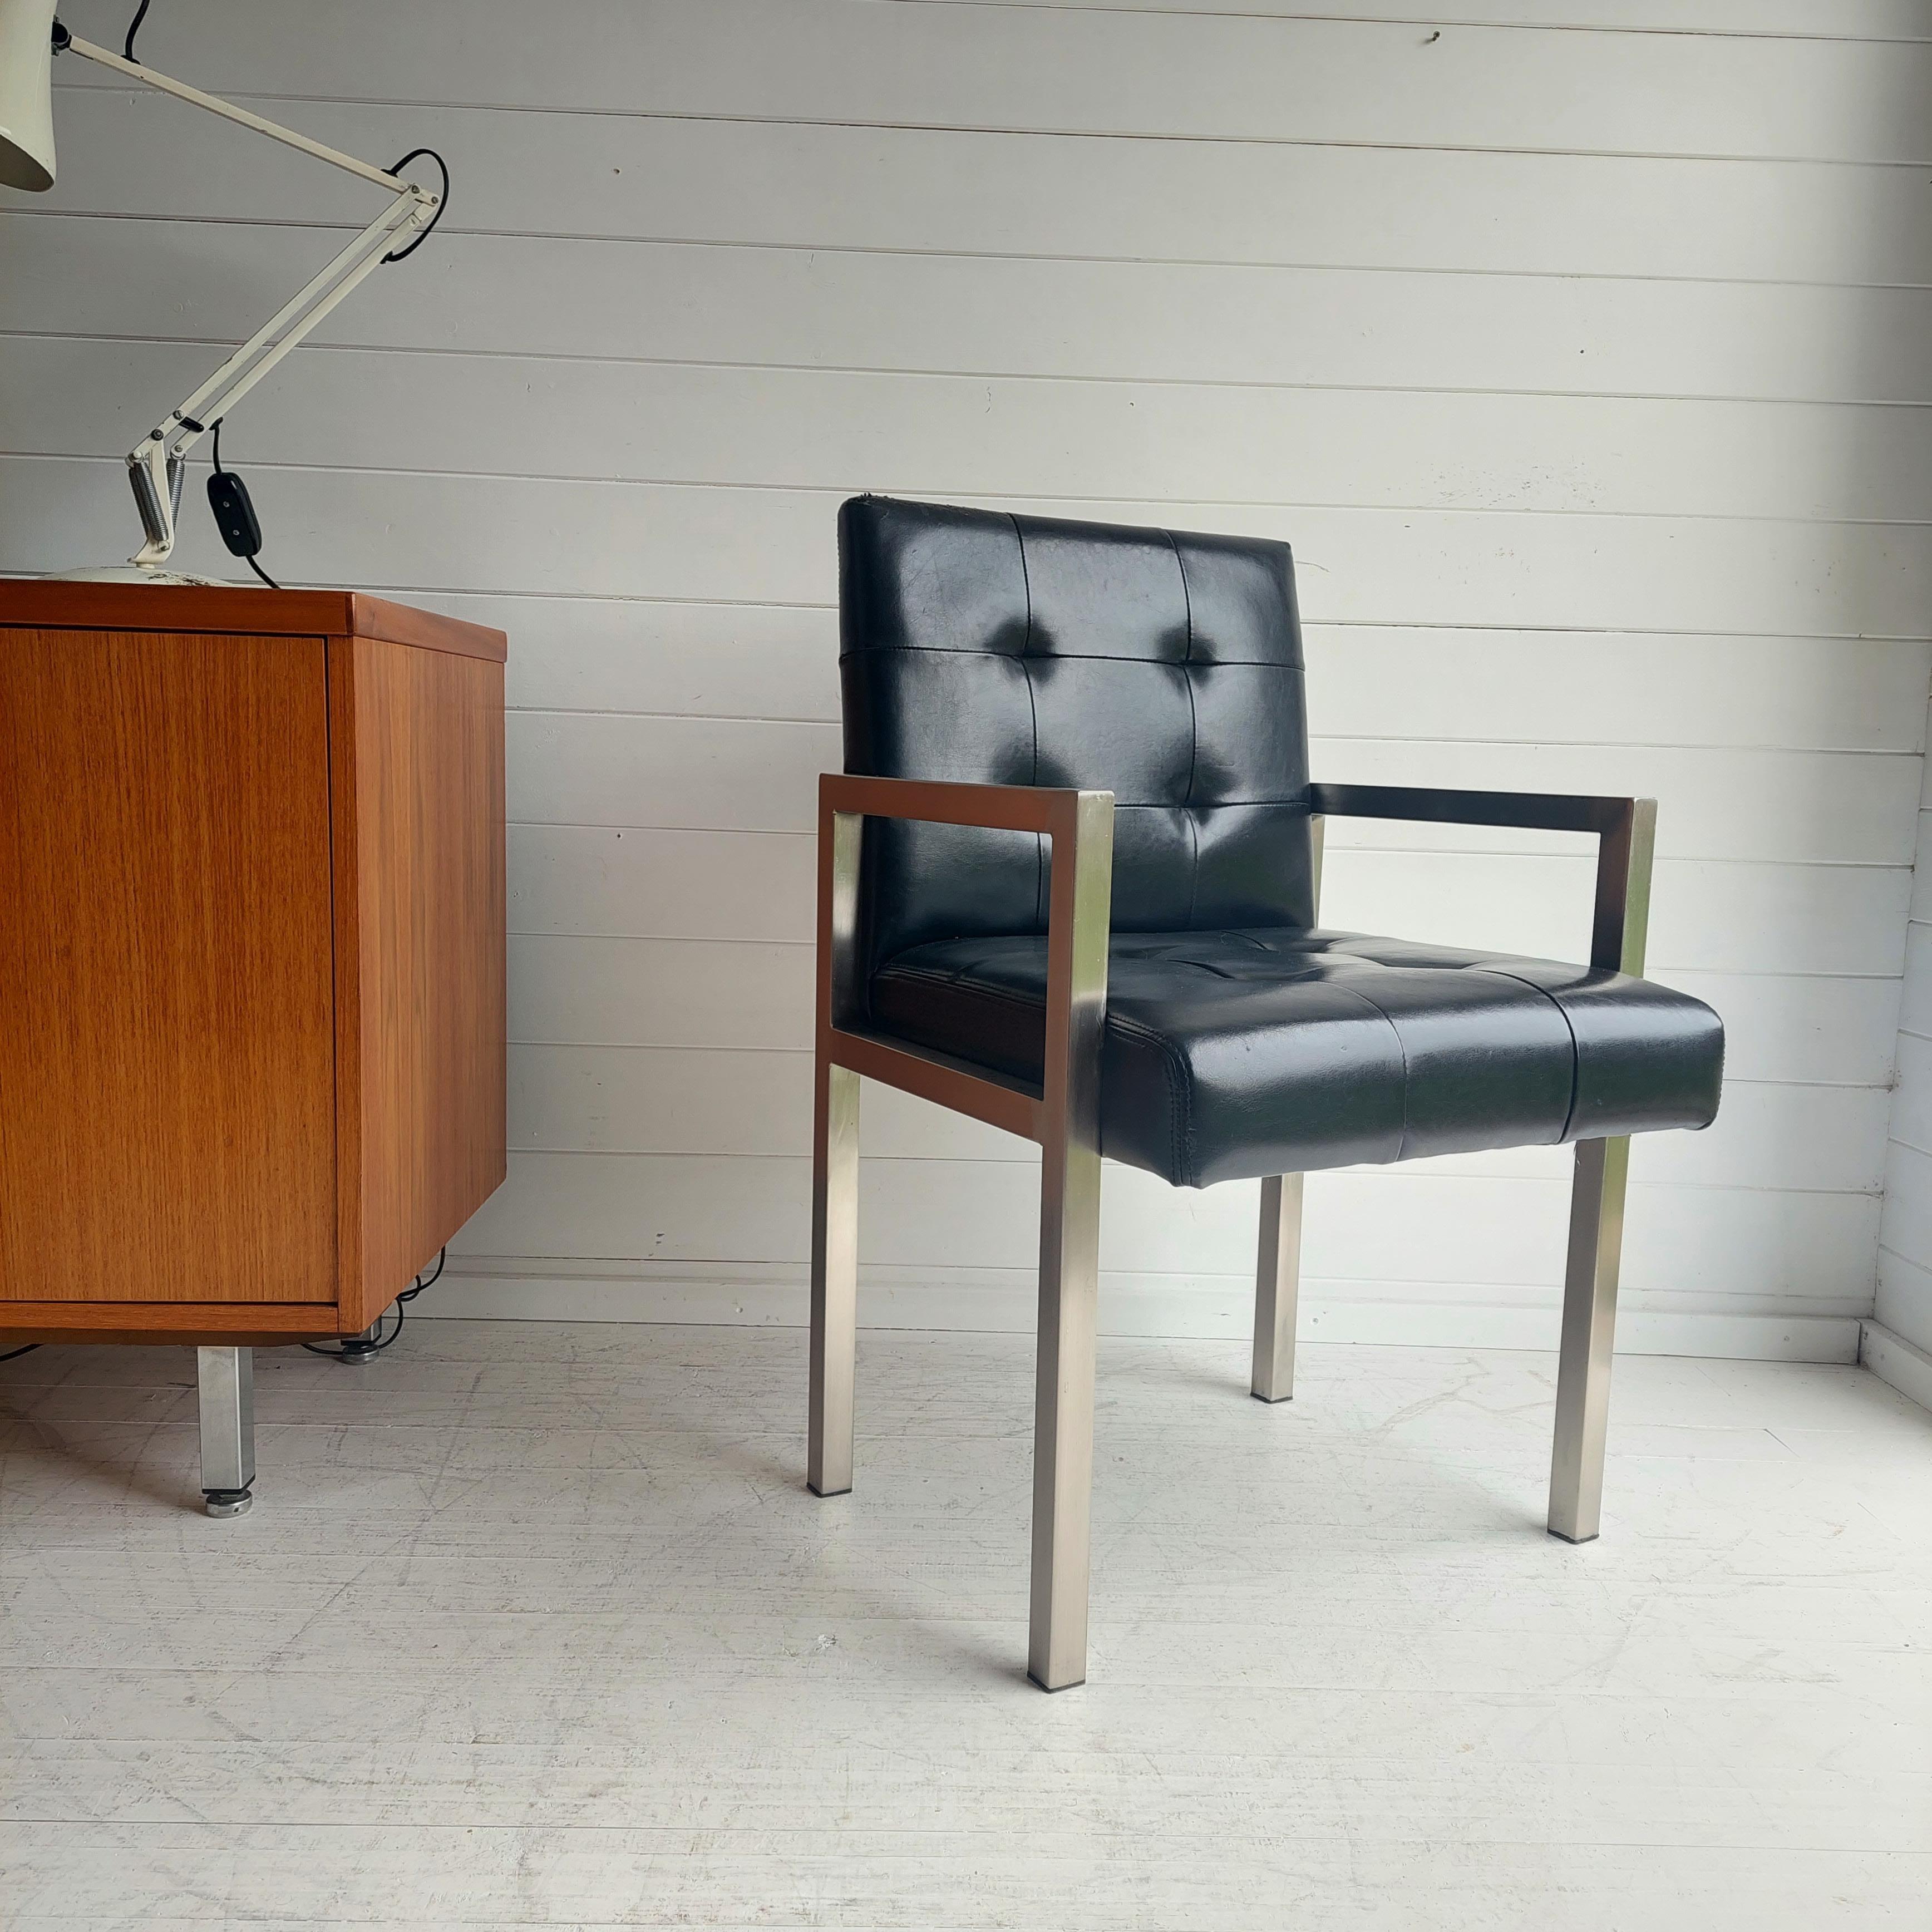 Atemberaubende moderne Sessel aus der Mitte des Jahrhunderts, entworfen unter dem Einfluss von Knoll

Mit quadratischen Chromrahmen und Armlehnen. 
Die Sitz- und Rückenlehnen sind elegant gepolstert und mit schwarzem Original-Vinyl bezogen.

